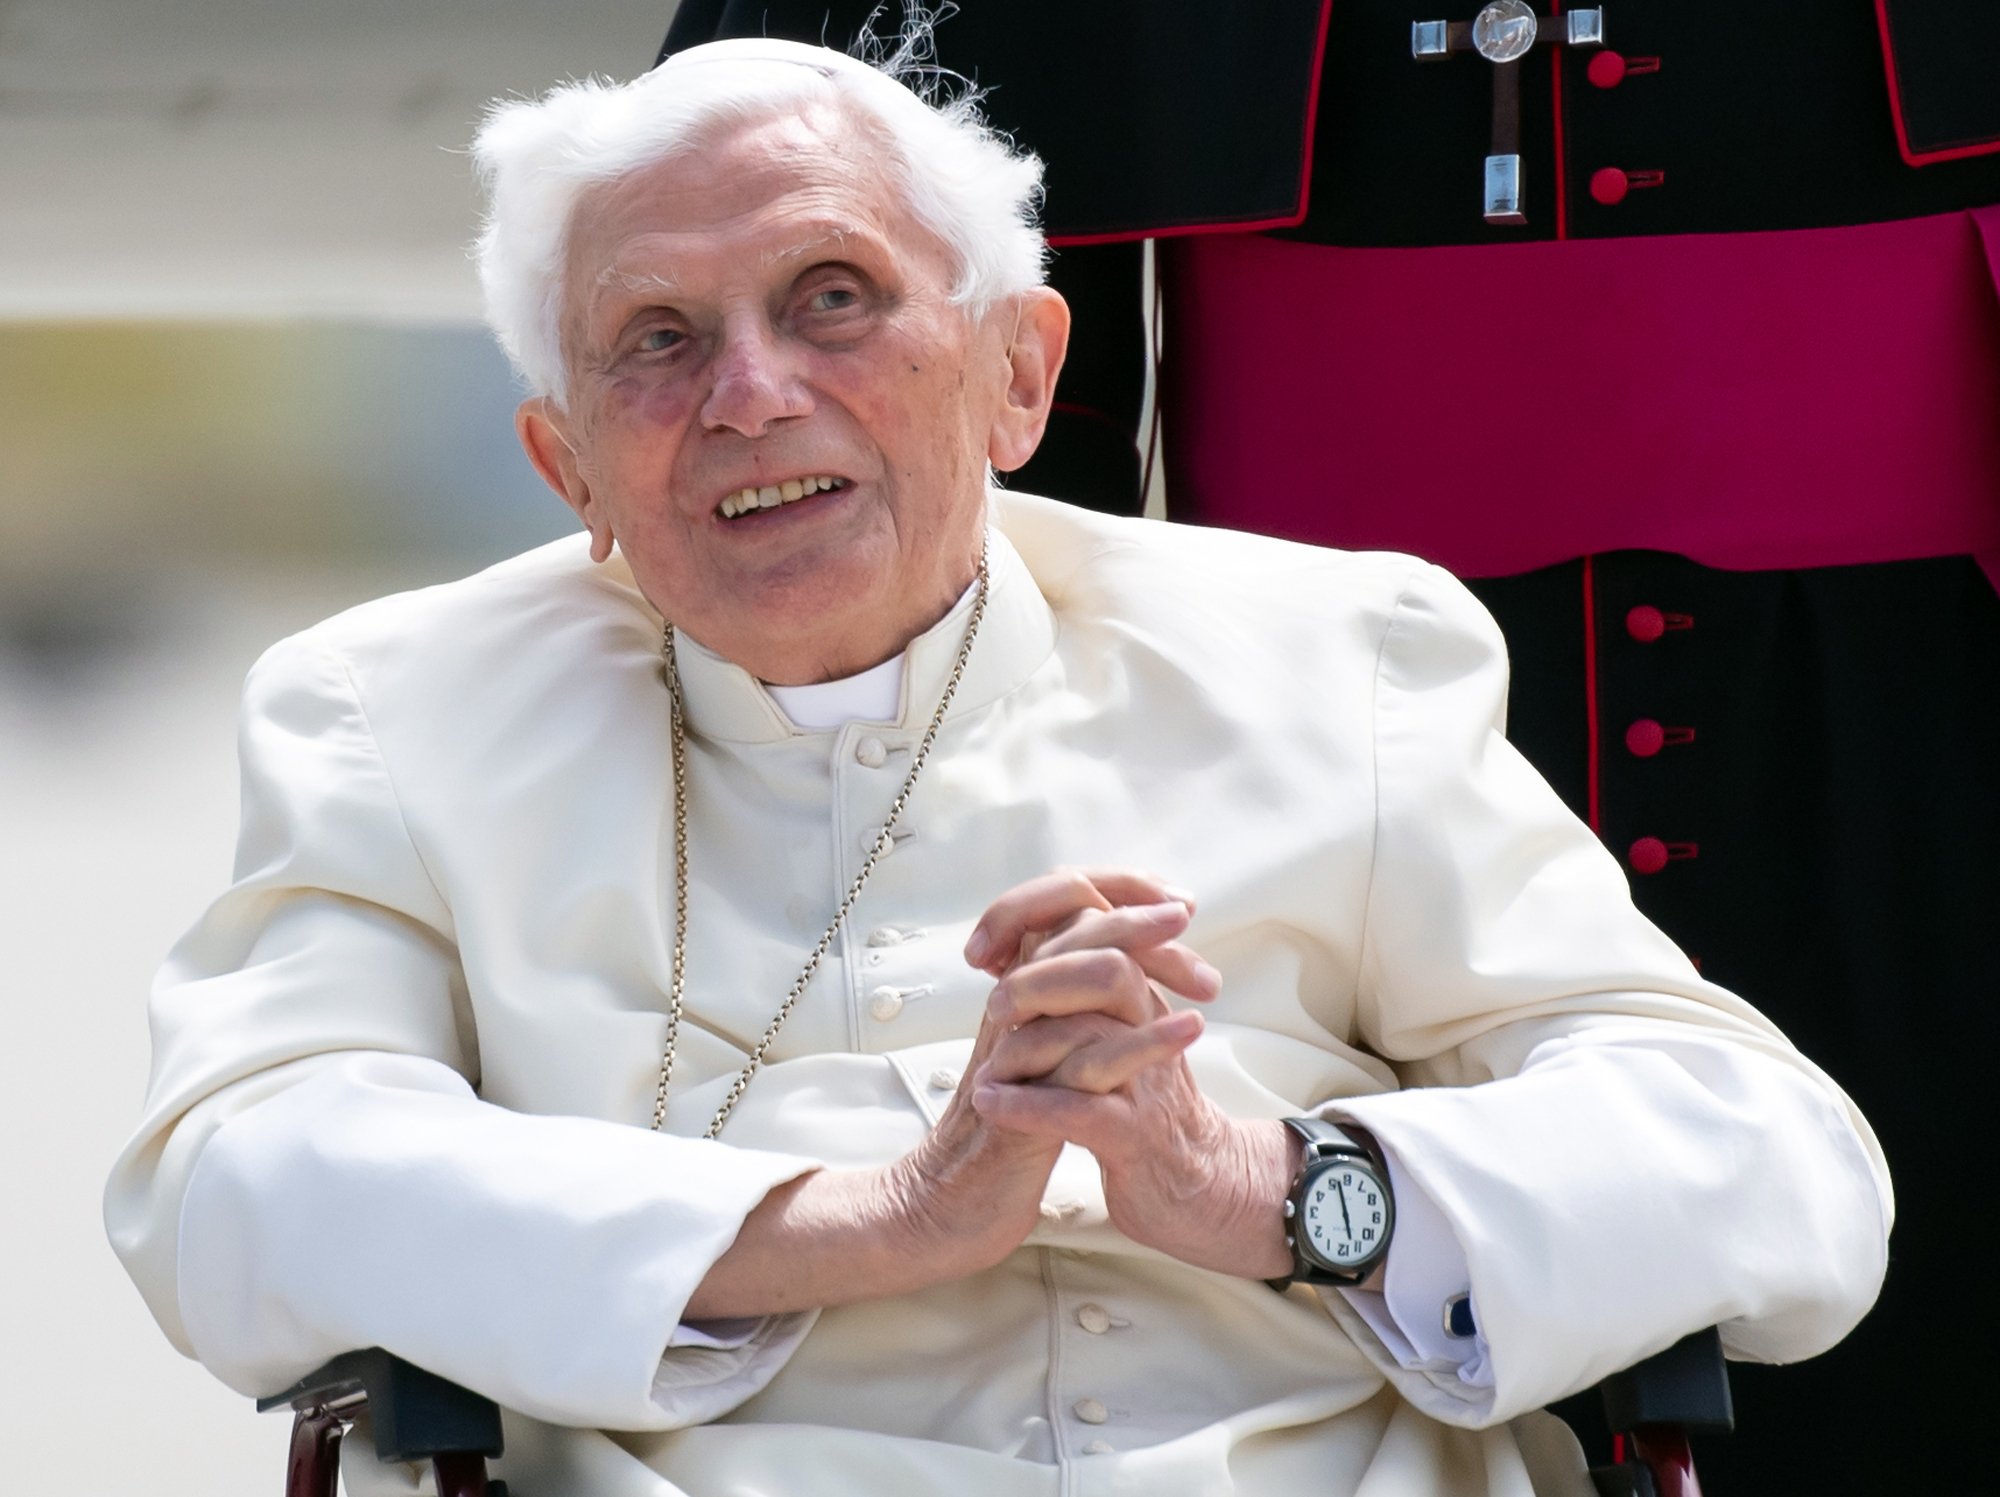 El papa Francesc, preocupat per la salut de Benet XVI: "Està molt malalt"